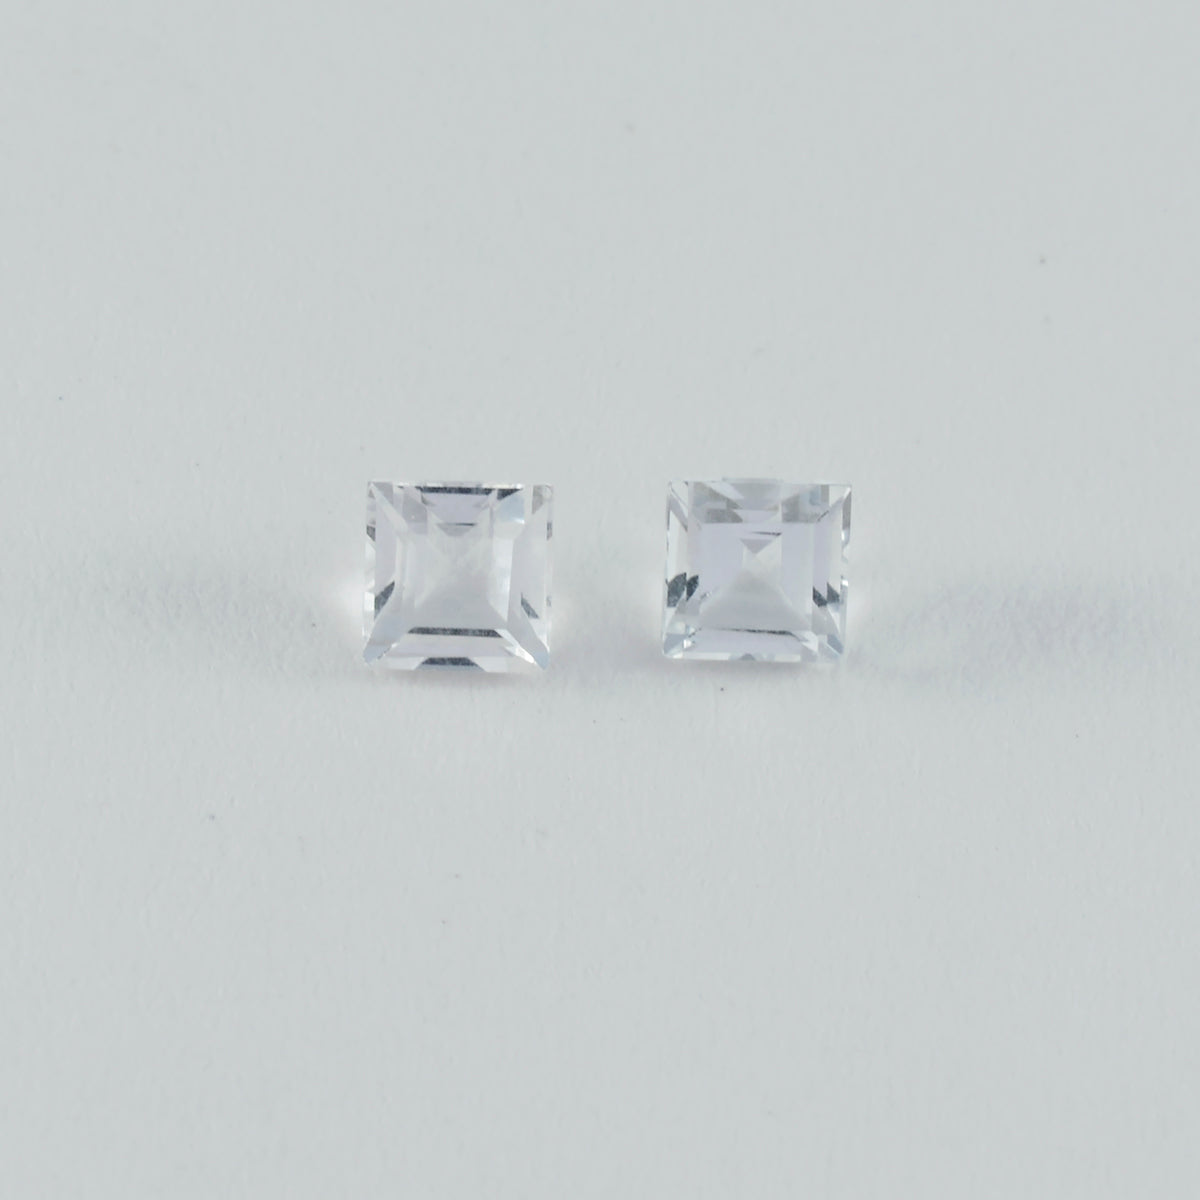 Riyogems 1PC wit kristalkwarts gefacetteerd 6x6 mm vierkante vorm knappe kwaliteit losse steen